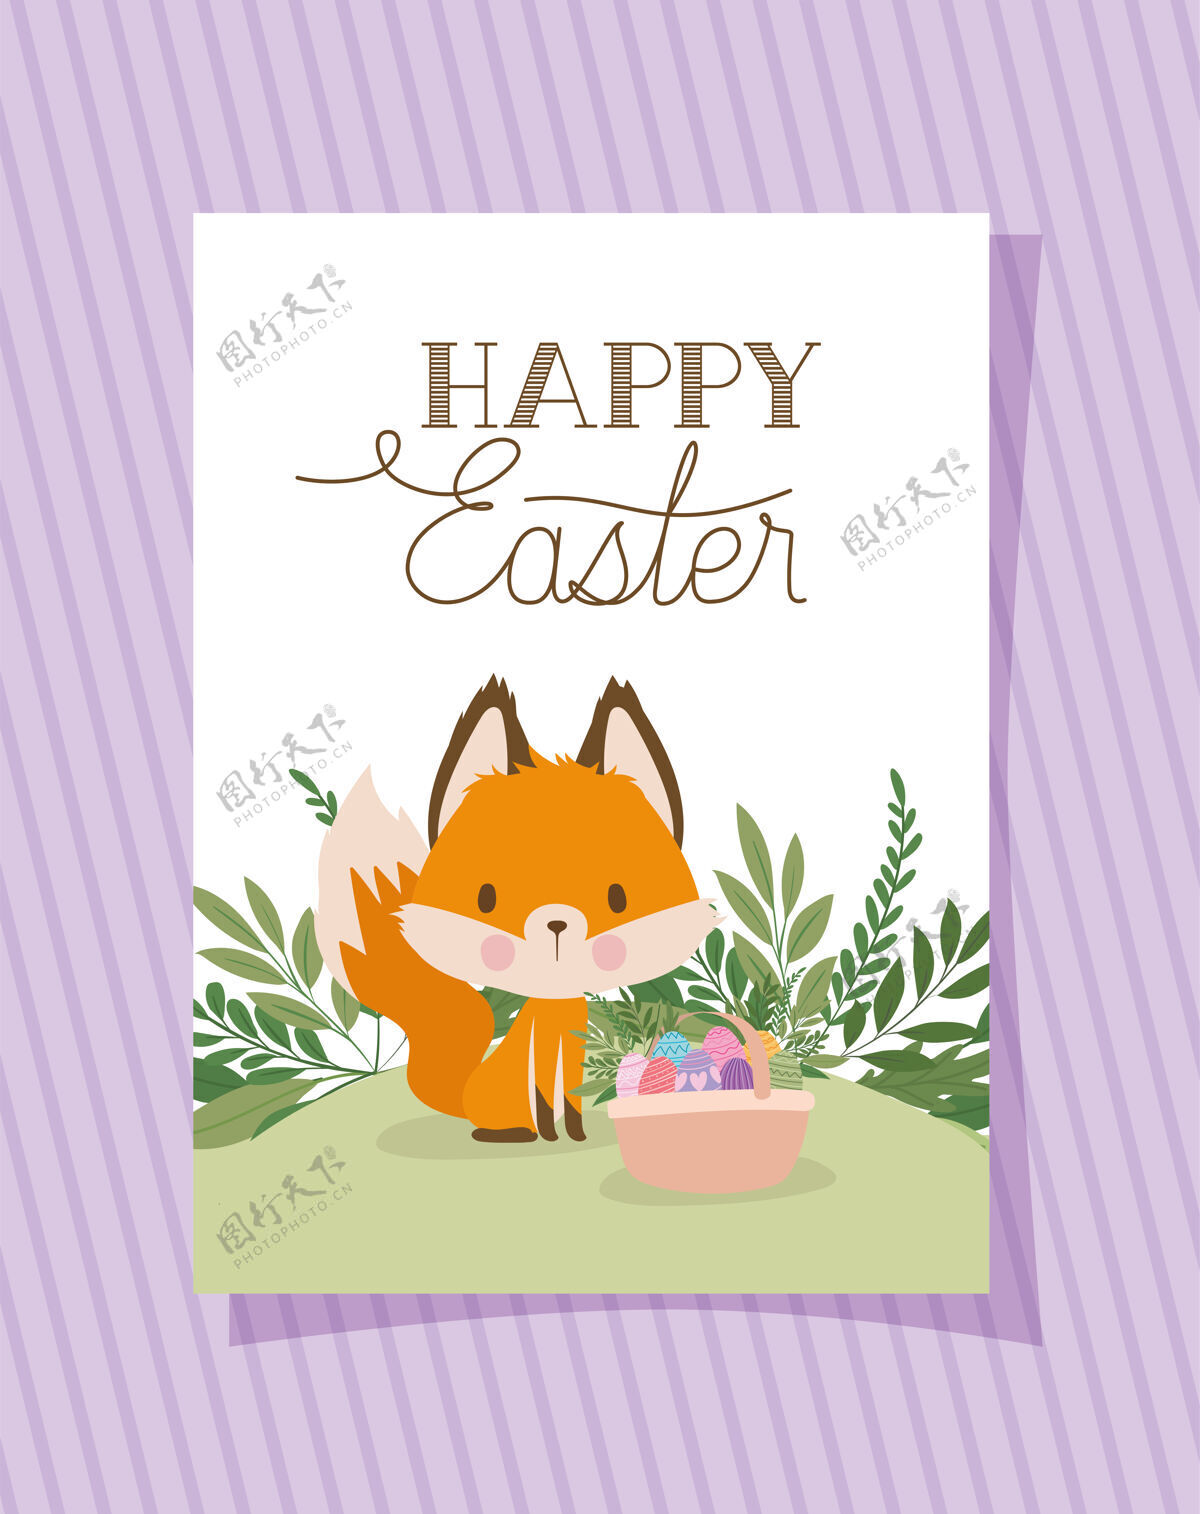 狐狸请柬上印有复活节快乐字样 印有一只可爱的狐狸和一个装满复活节彩蛋的篮子插图设计宝贝蛋春天